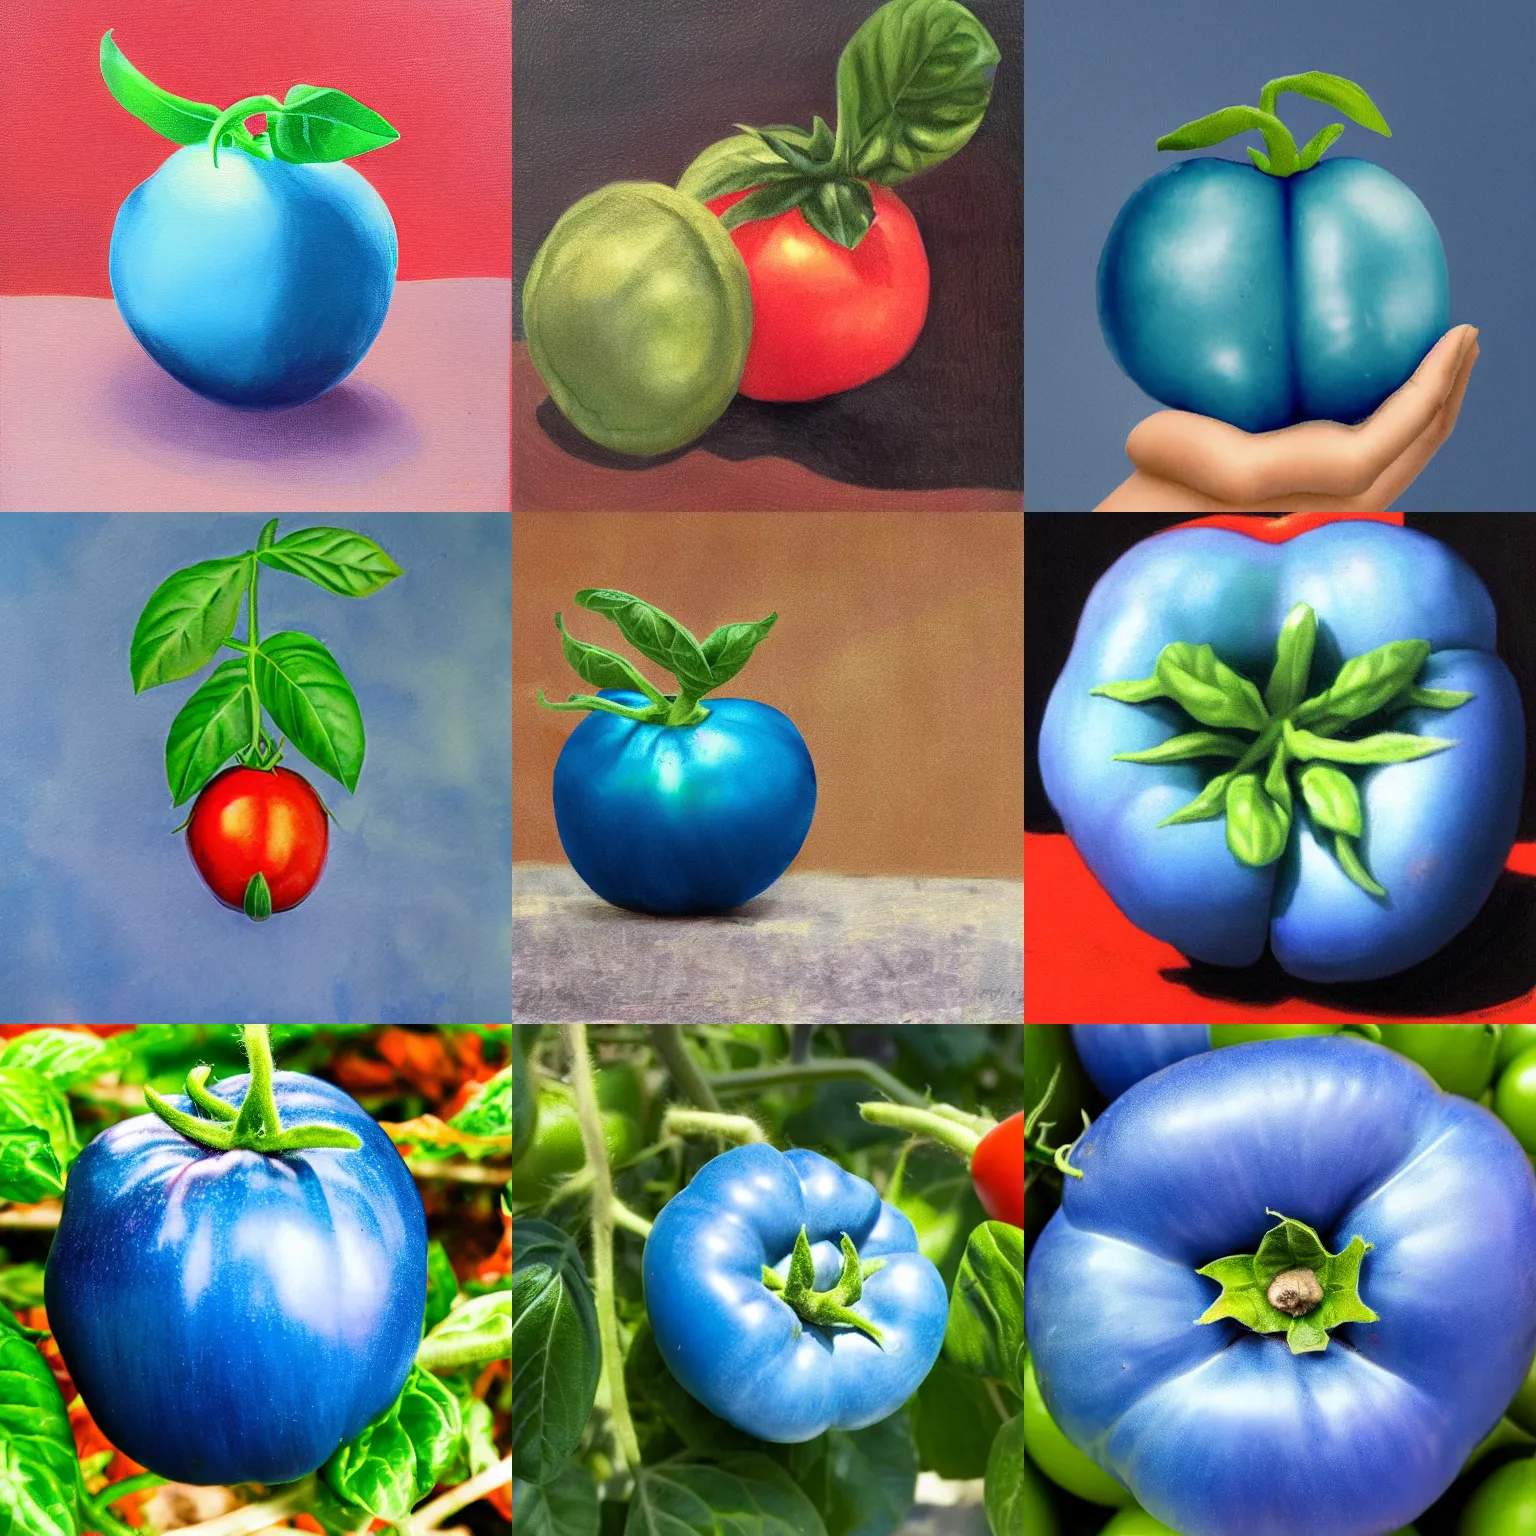 Prompt: a blue tomato